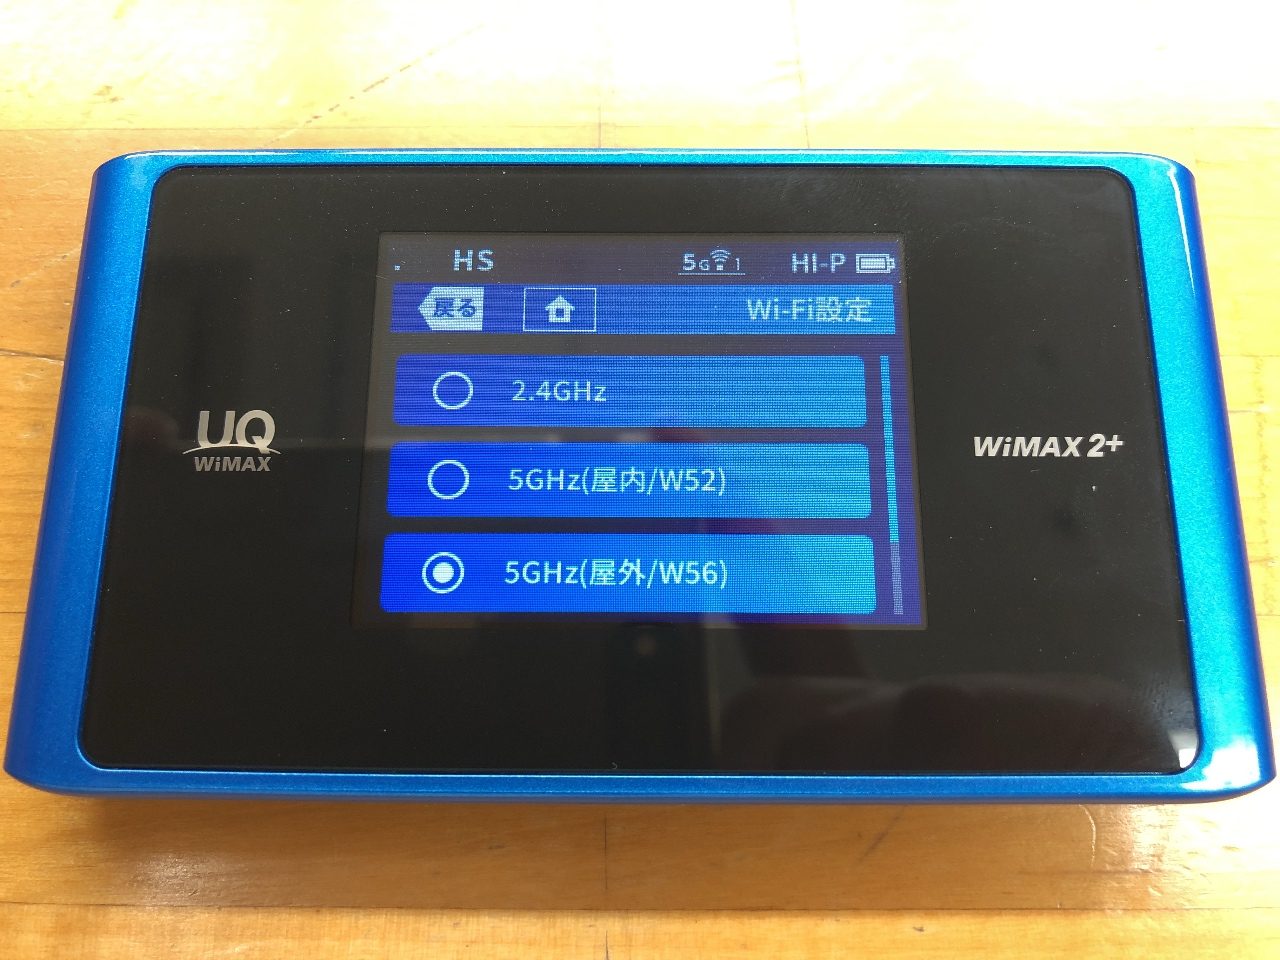 モバイルWi-Fiルータ WiMAX(ワイマックス) 2.4GHz 5GHz(屋内) 5GHz(屋外) 周波数の違いと利用方法